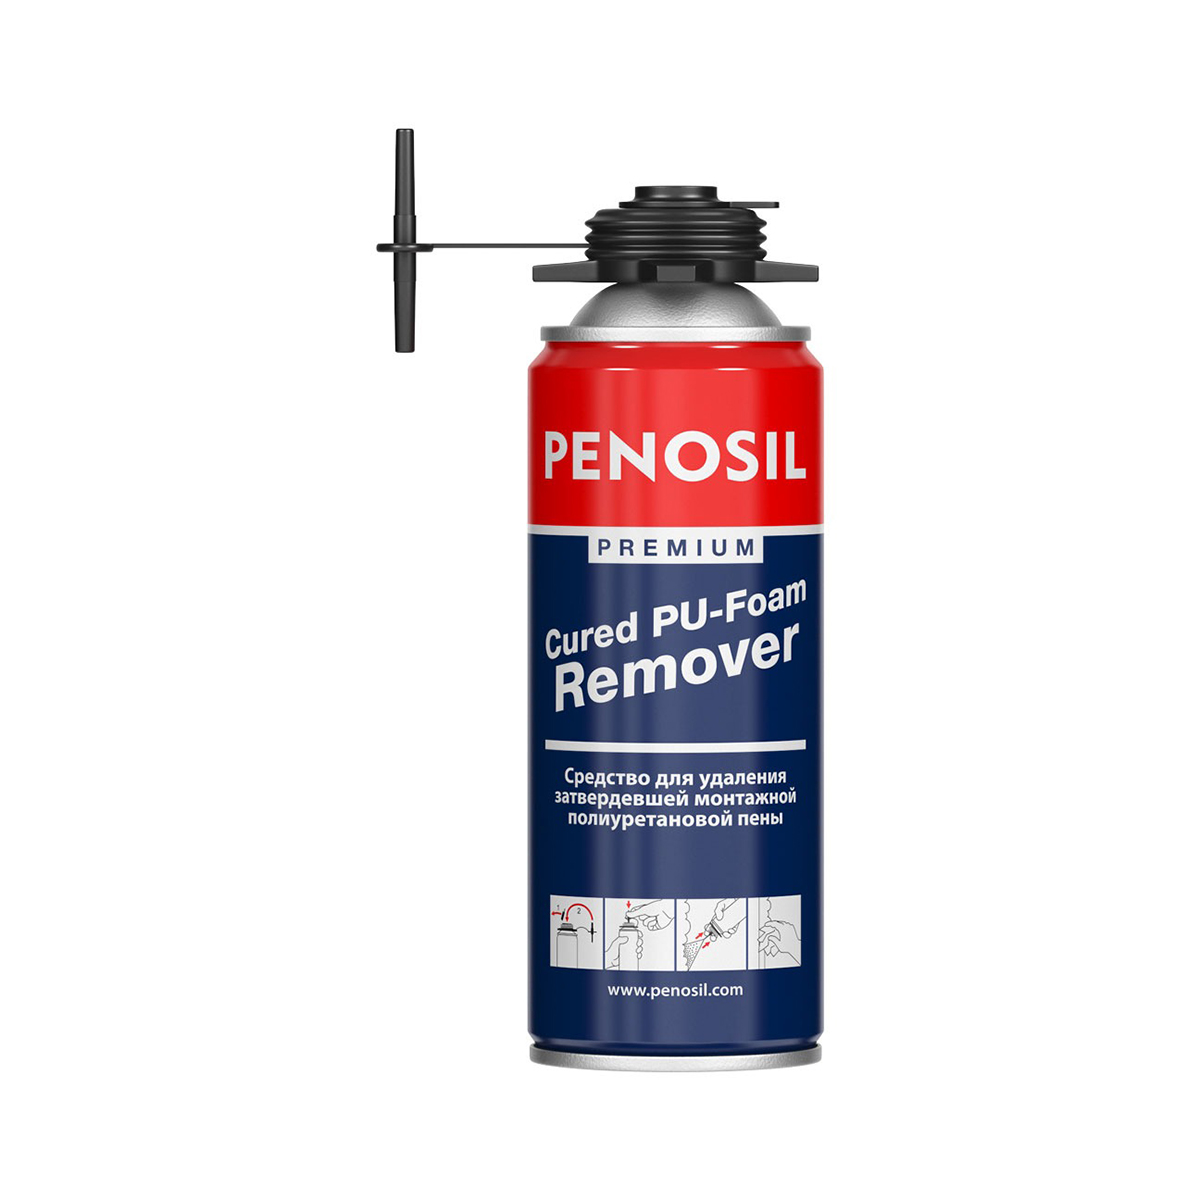 Очиститель застывшей монтажной пены Penosil Premium Cured PU-Foam Remover, 340 мл очиститель затвердевшей монтажной пены sila